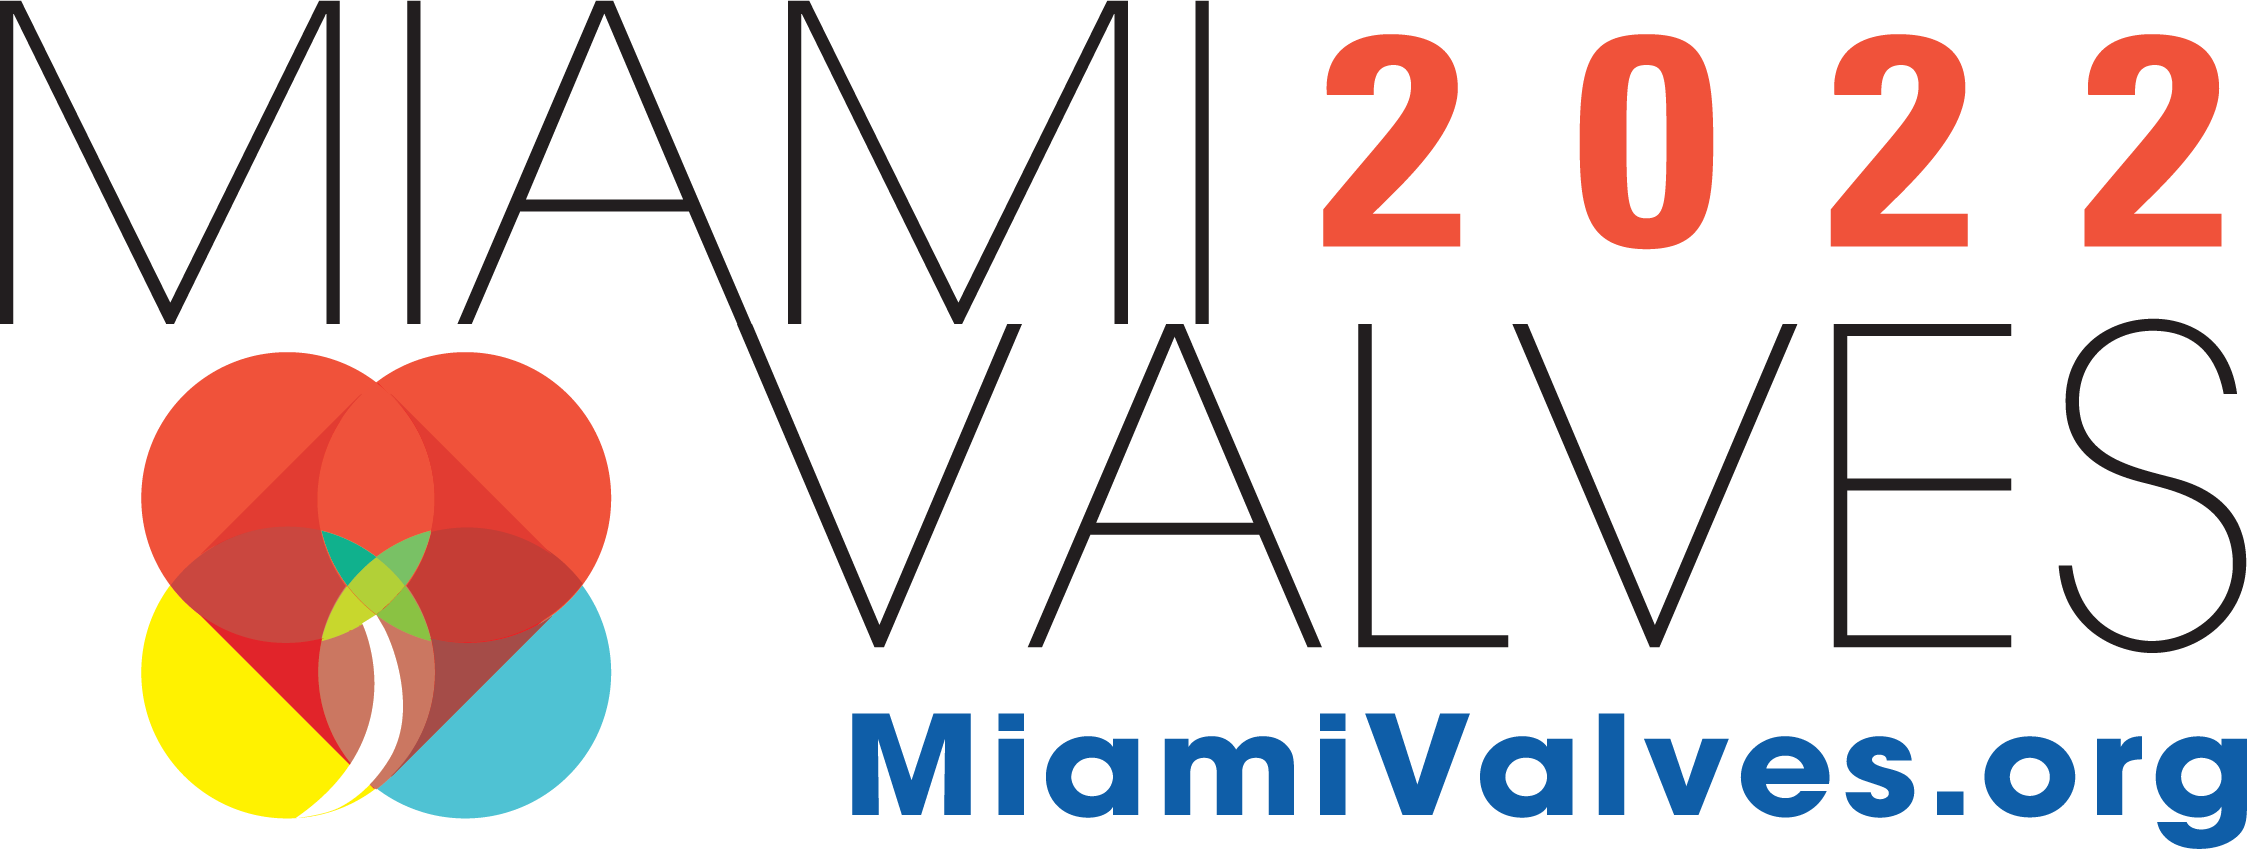 Miami Valves 2022 IAC